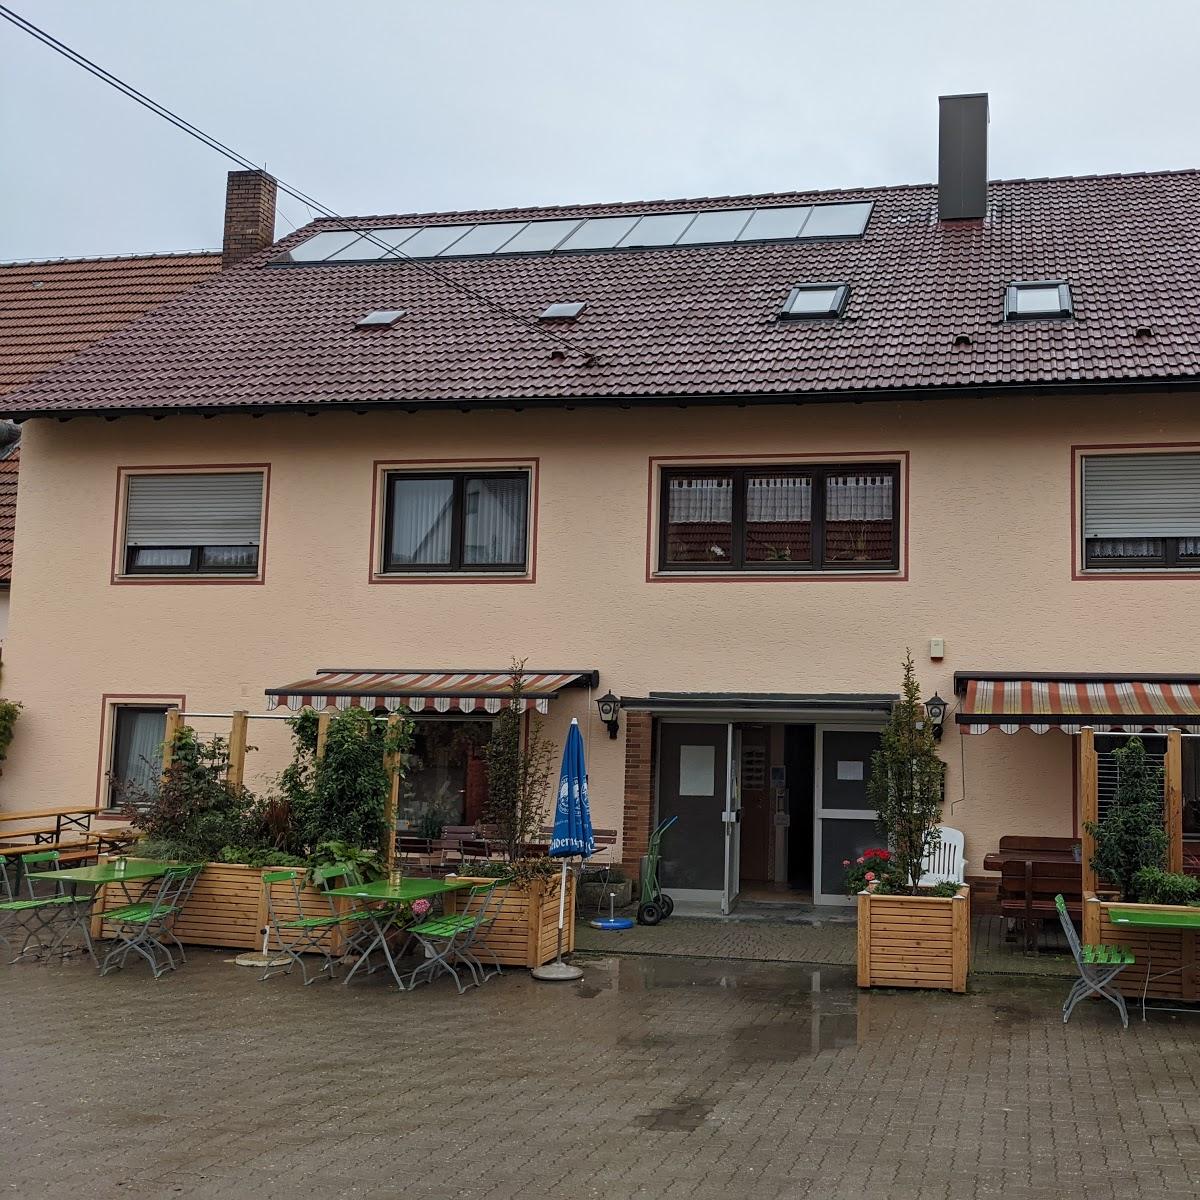 Restaurant "Robert und Karin Scharrer Gasthaus-Metzgerei GbR" in Simmelsdorf